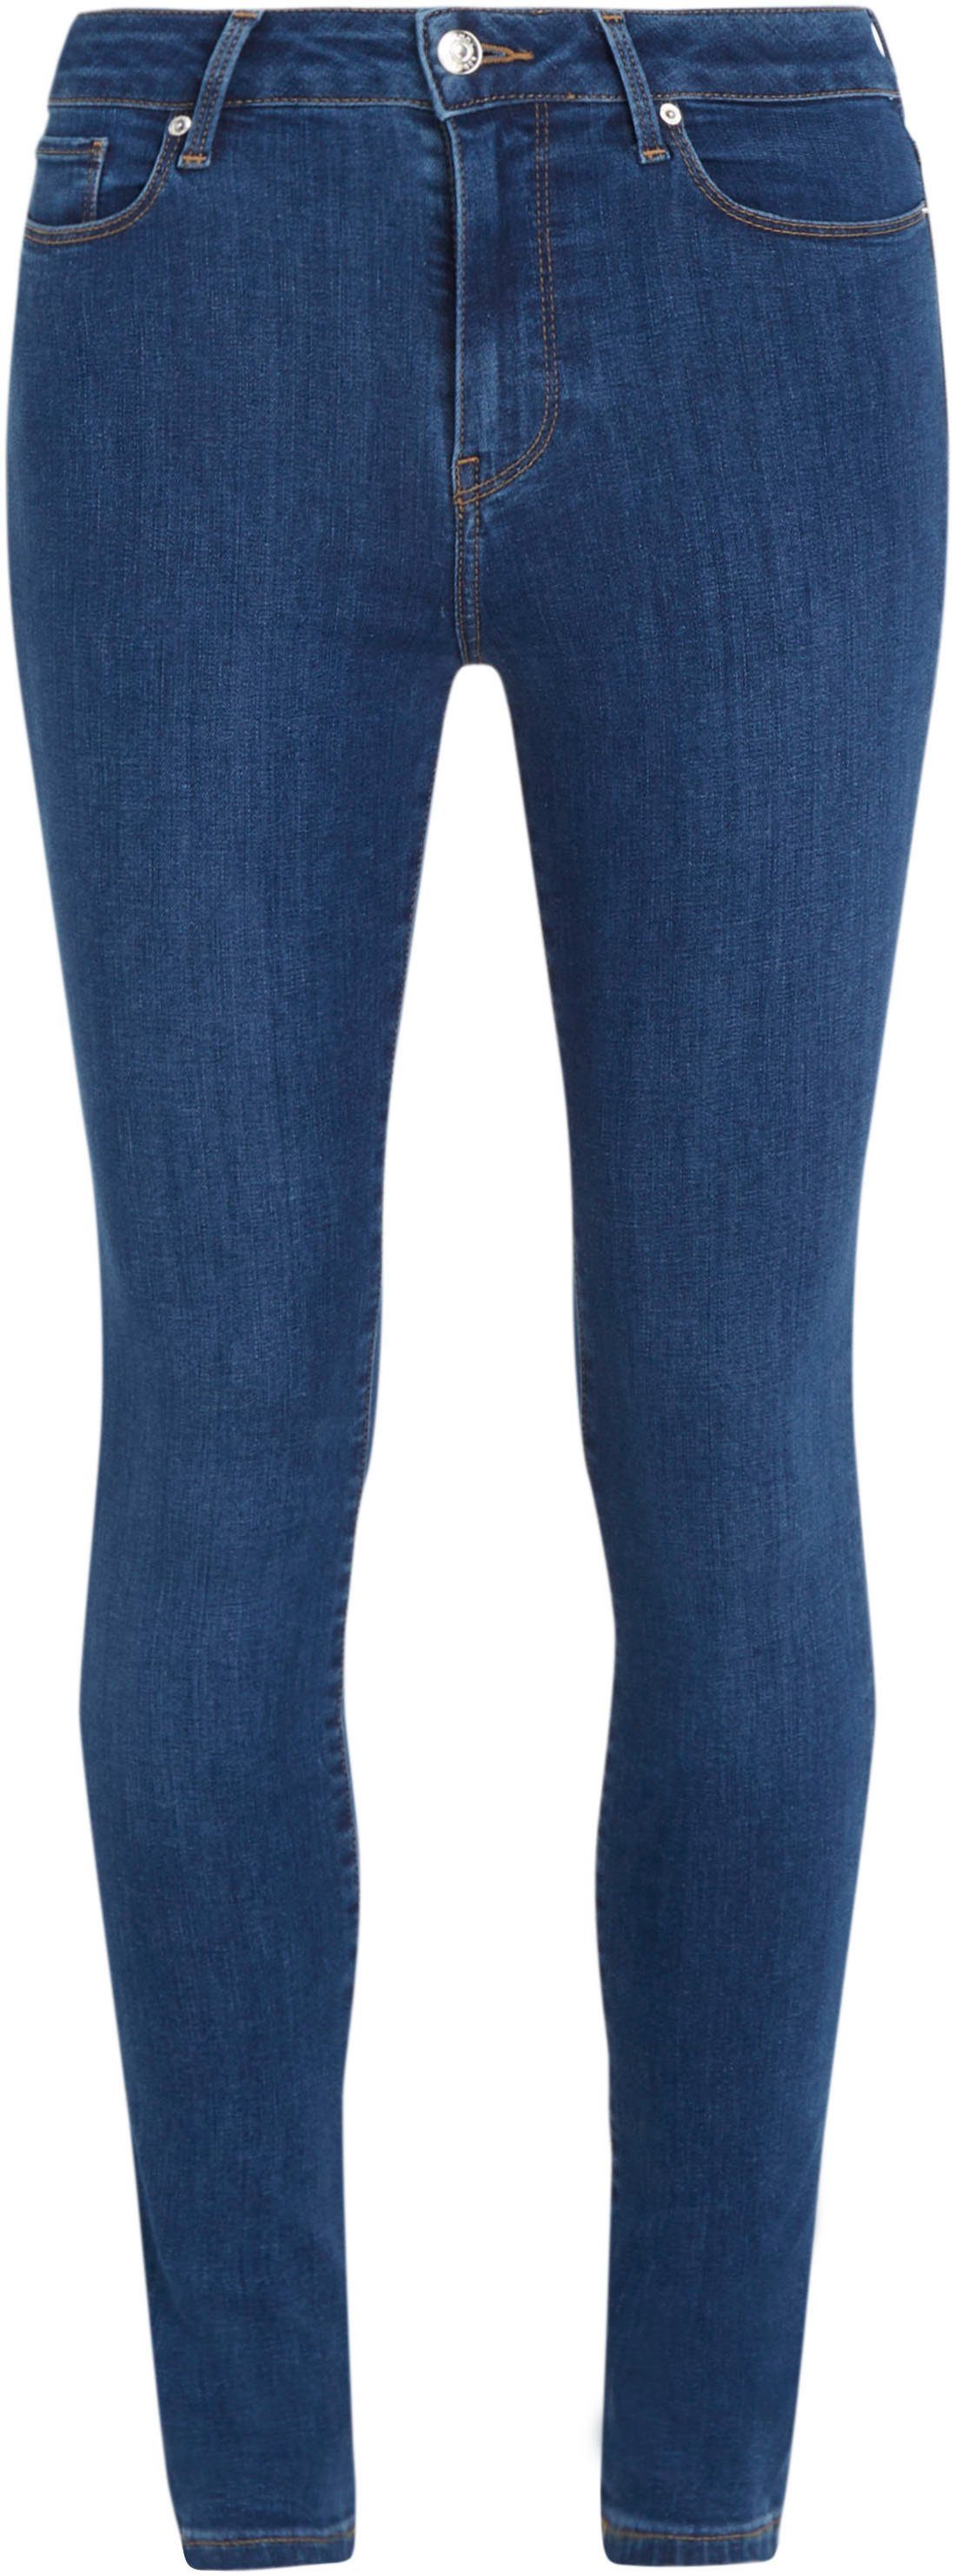 U Waschung TH FLEX SKINNY blauer Tommy Skinny-fit-Jeans KAI in HW HARLEM Hilfiger